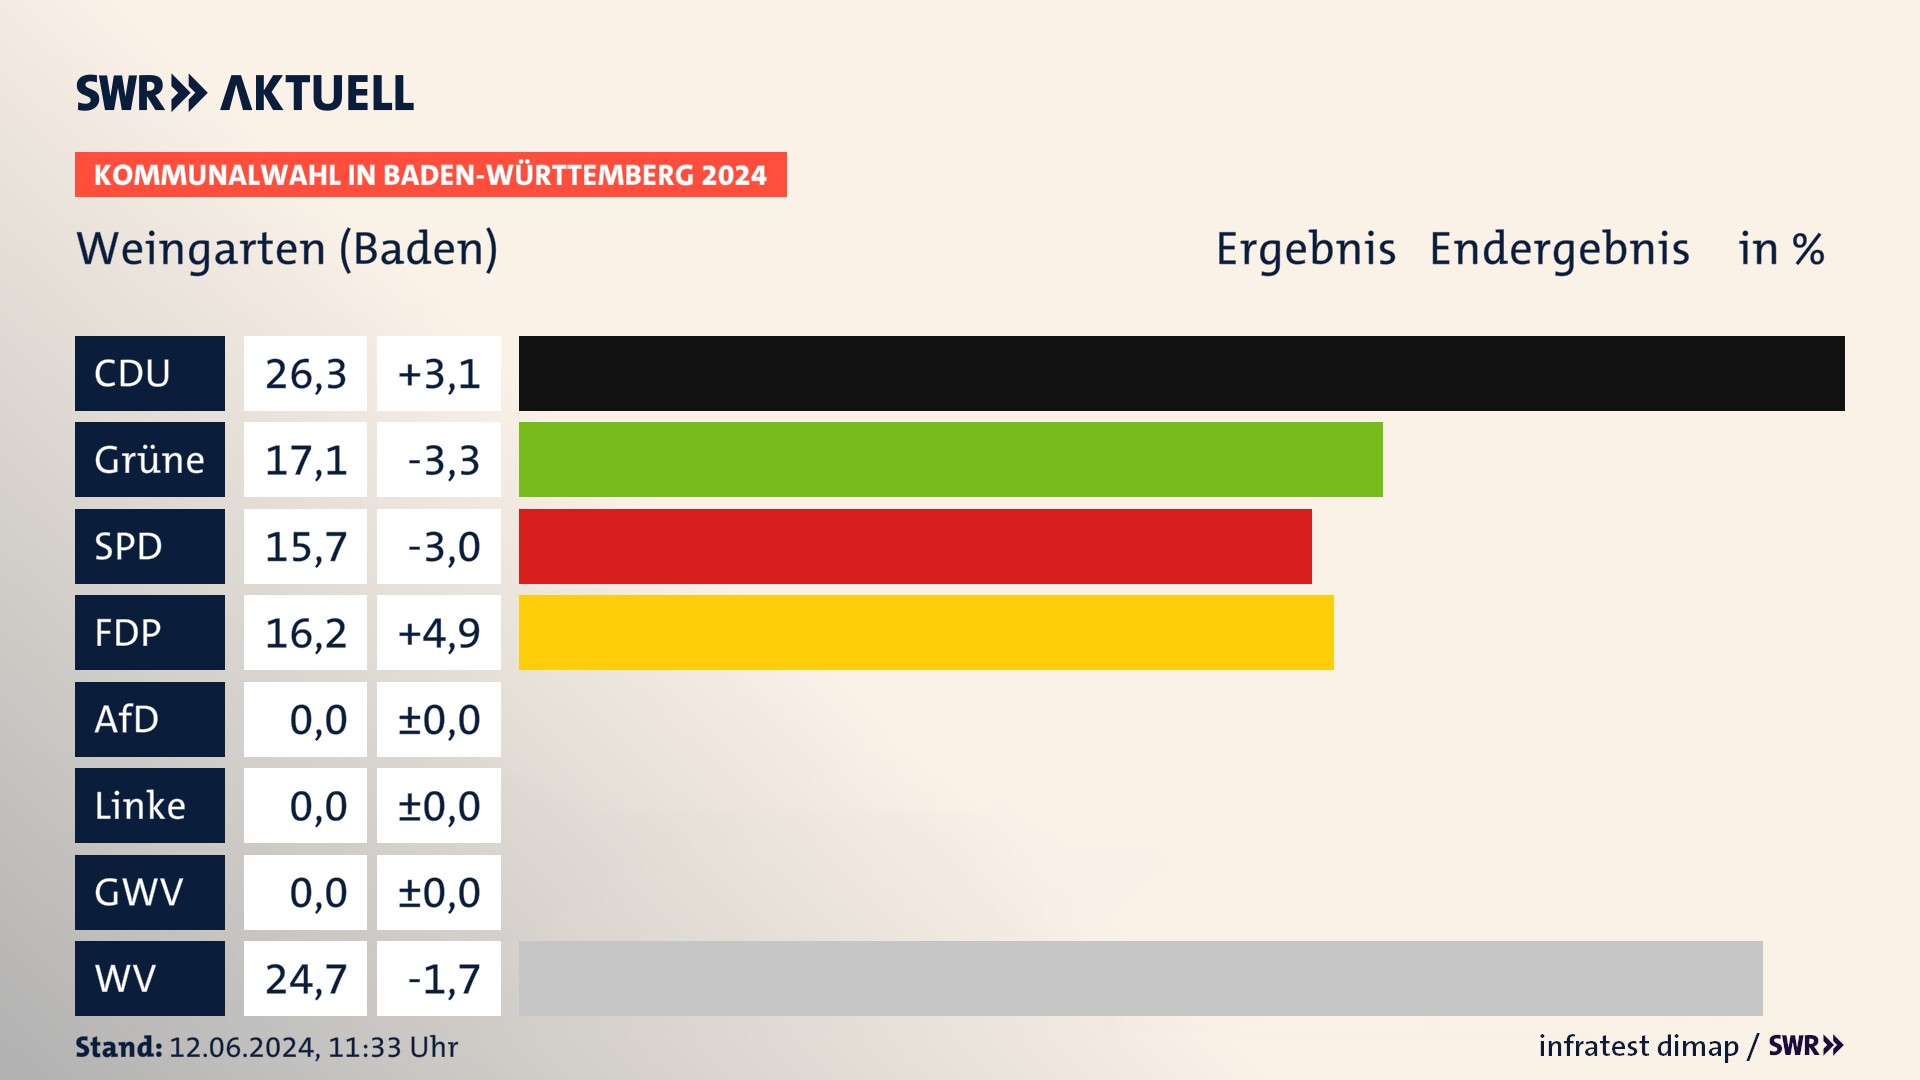 Kommunalwahl 2024 Endergebnis Zweitstimme für Weingarten (Baden). In Weingarten (Baden) erzielt die CDU 26,3 Prozent der gültigen  Stimmen. Die Grünen landen bei 17,1 Prozent. Die SPD erreicht 15,7 Prozent. Die FDP kommt auf 16,2 Prozent. Die Wählervereinigungen landen bei 24,7 Prozent.